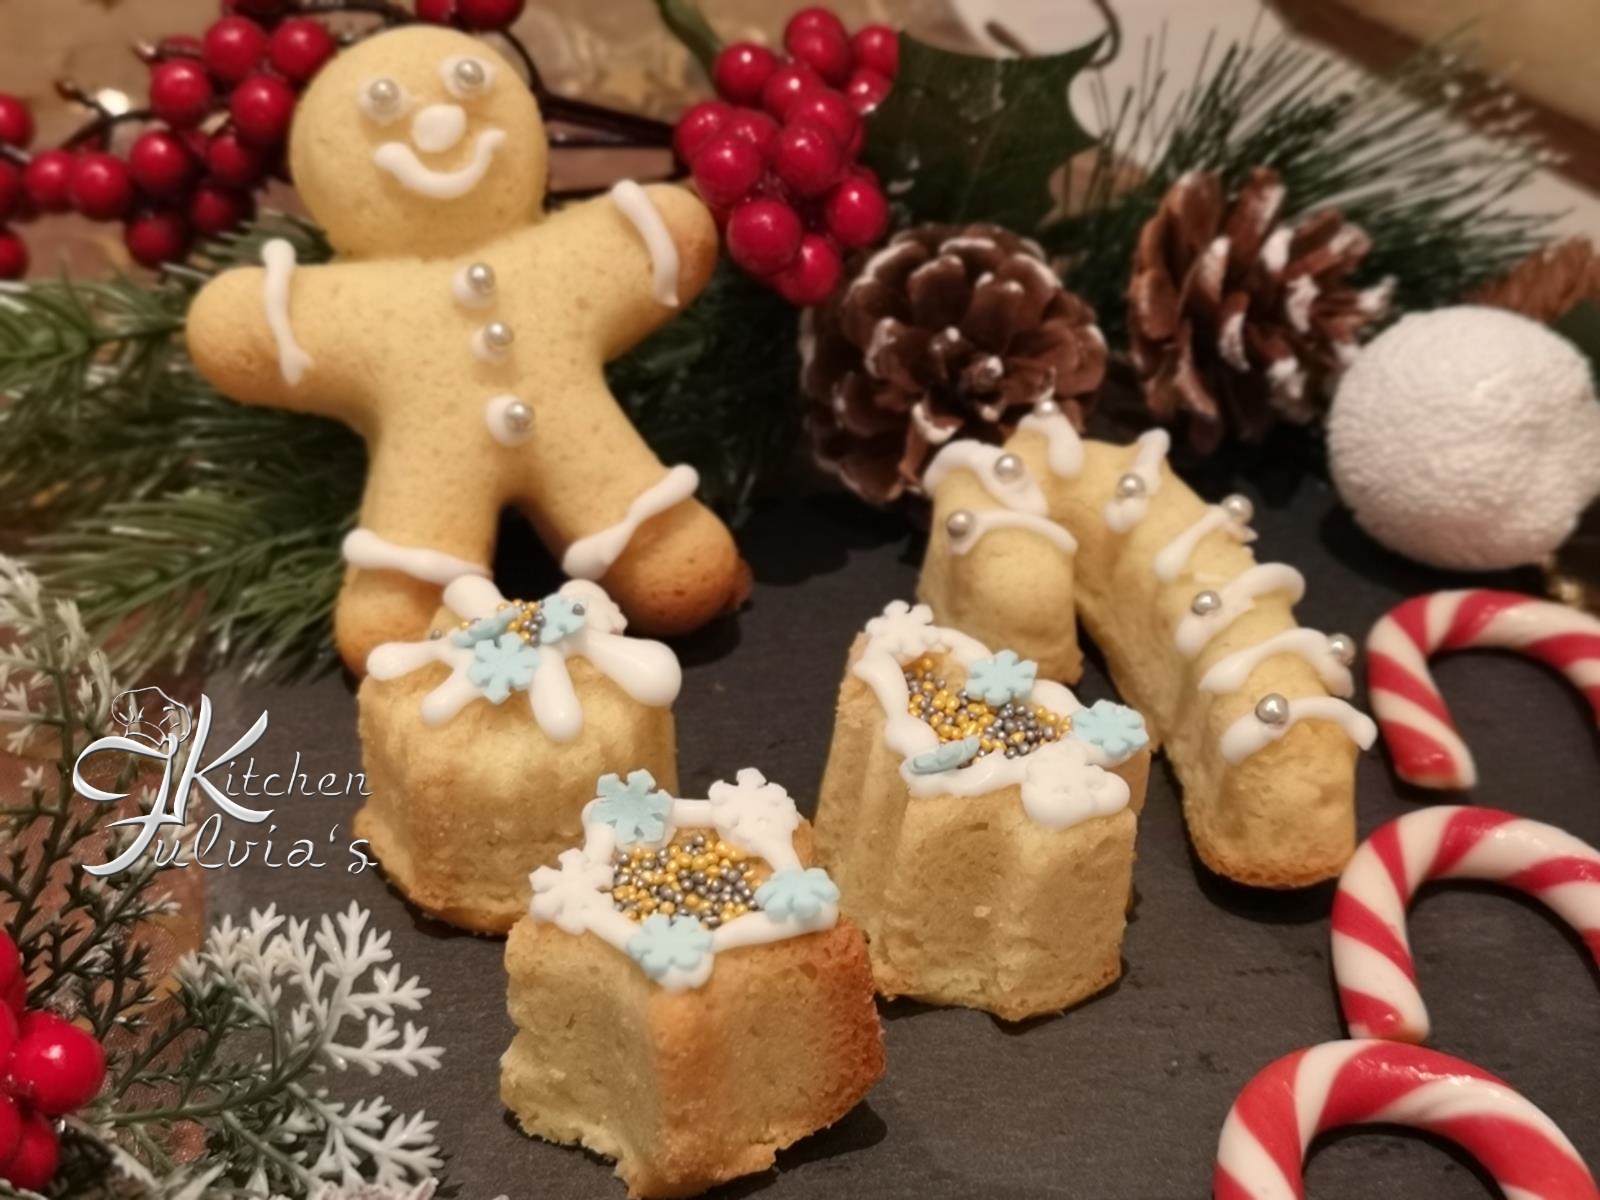 Albero Di Natale Kitchen.Biscotti Frolle Montate All Anice Stellato Per Natale La Ricetta Fulvia S Kitchen